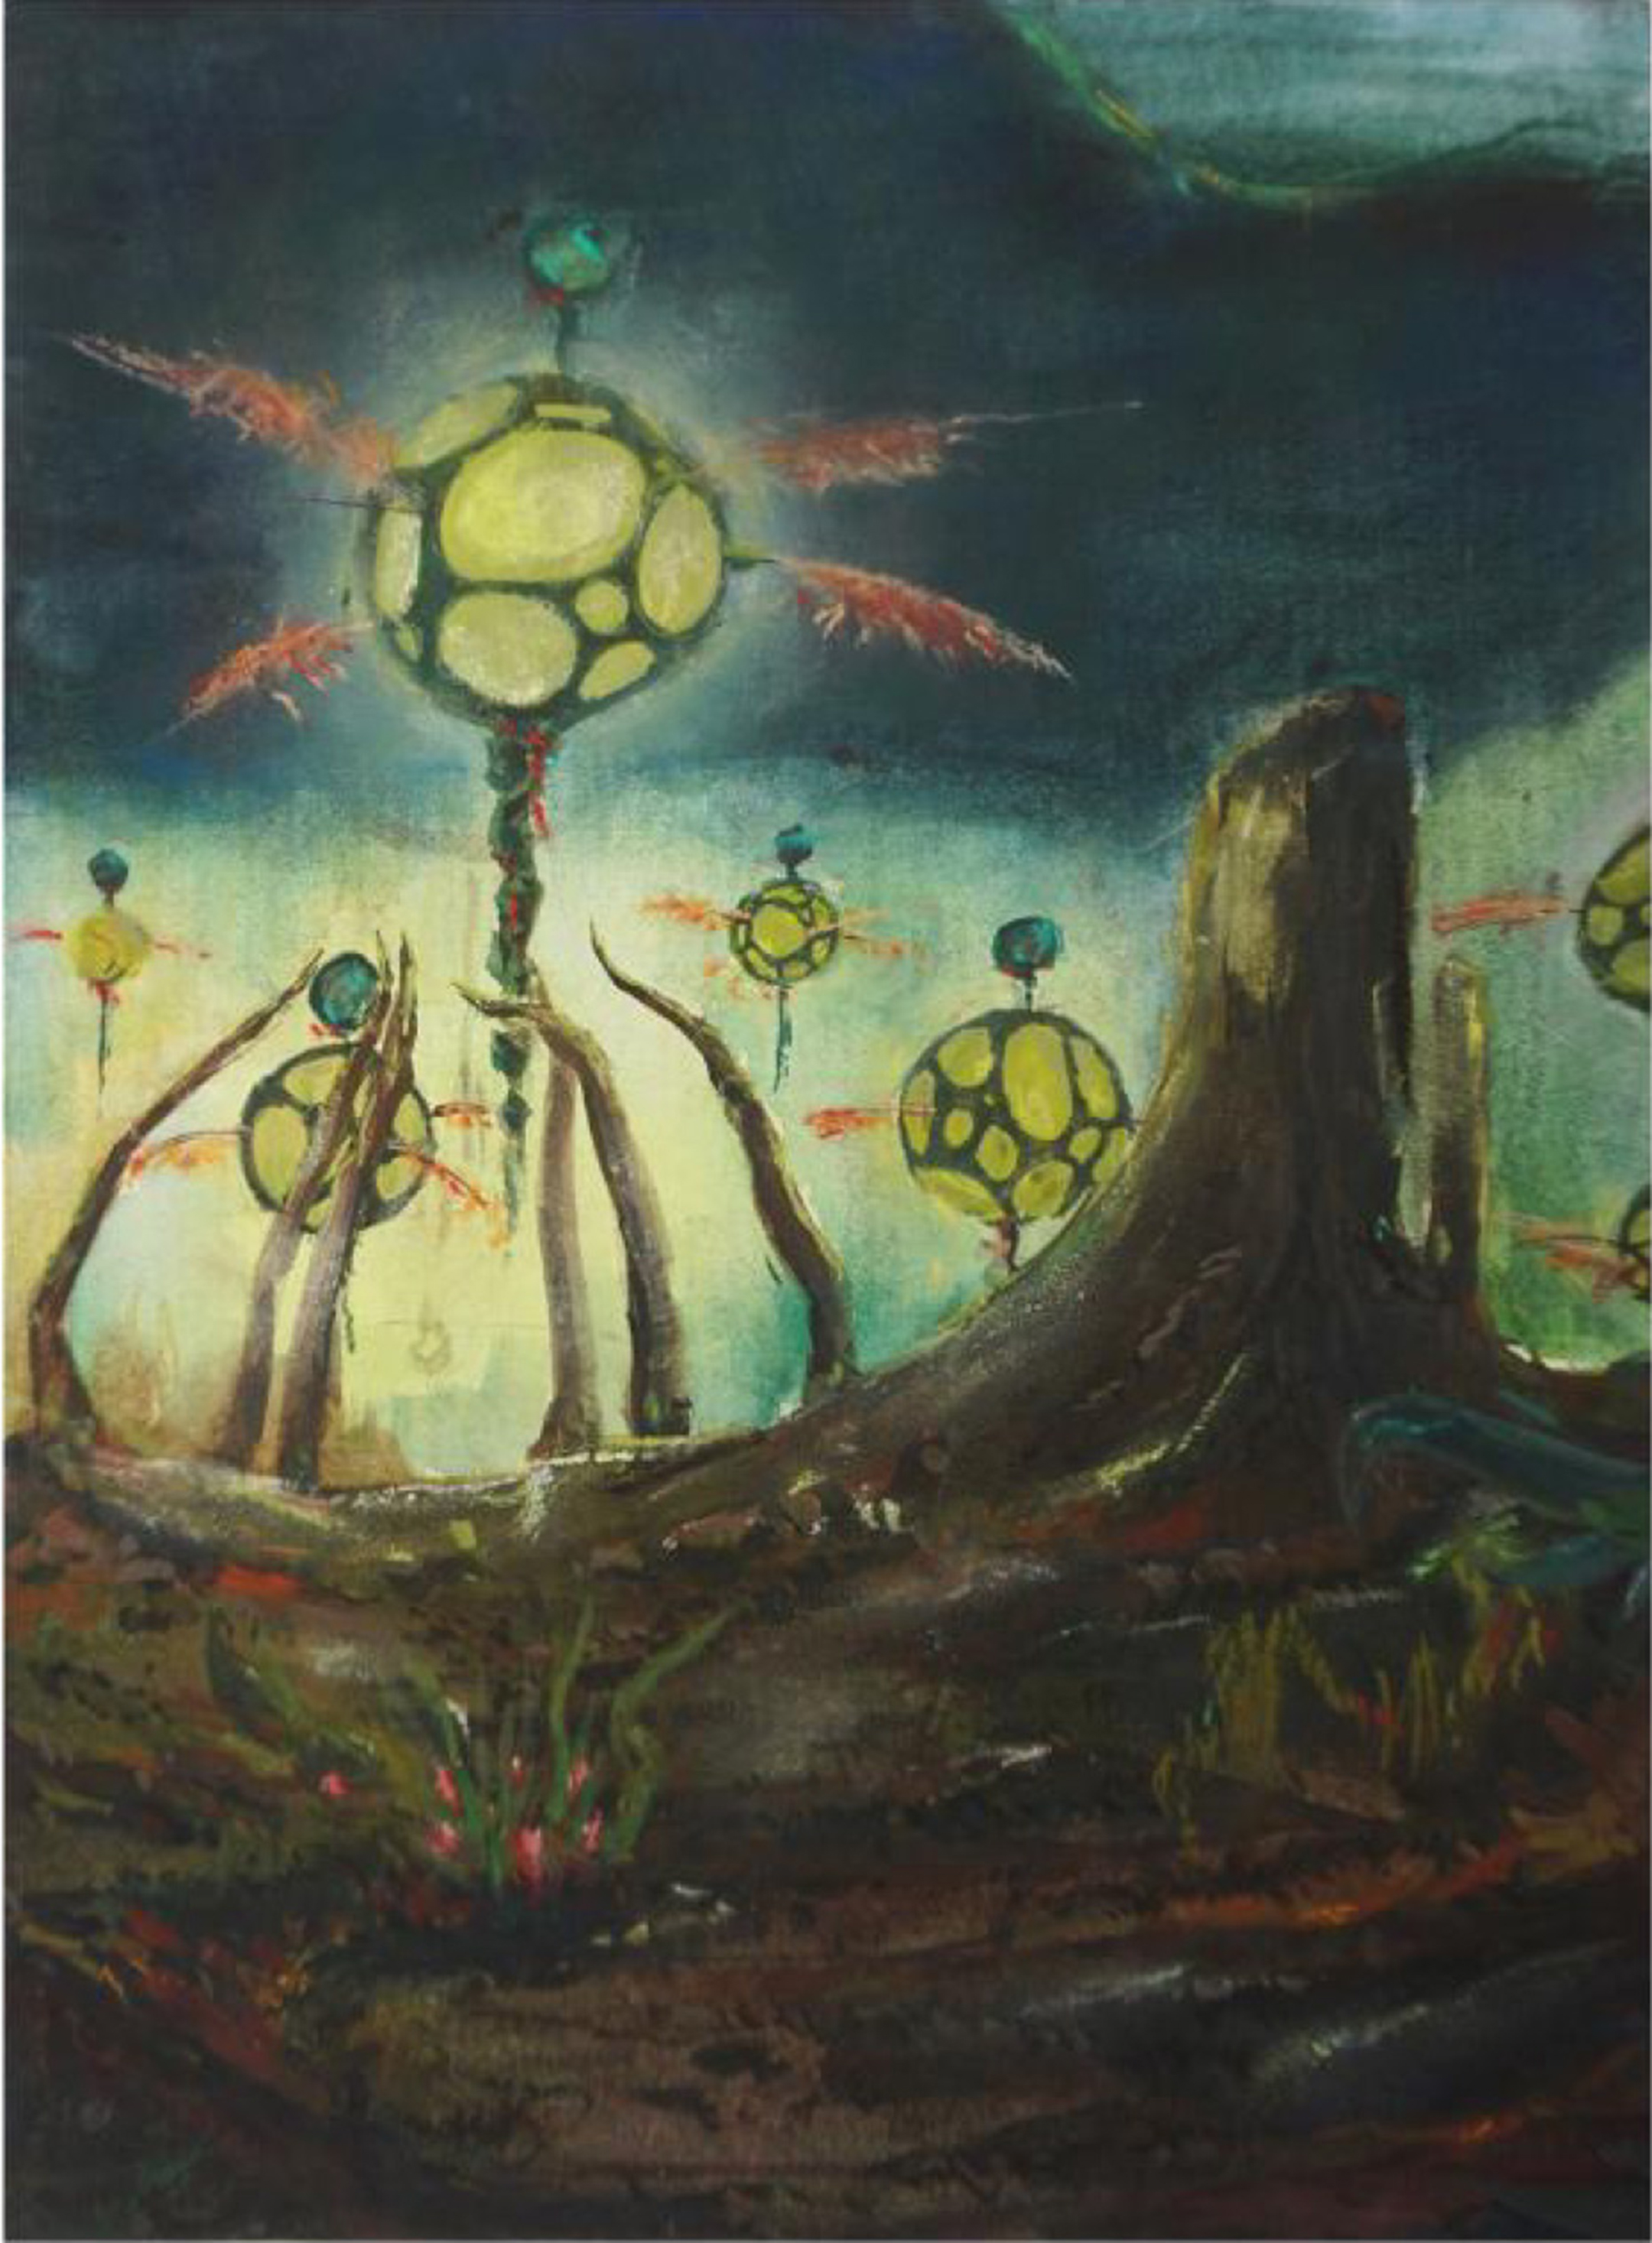 Illustration of a sci-fi-like scene of yellow orbs on monopods glowing in a barren landscape